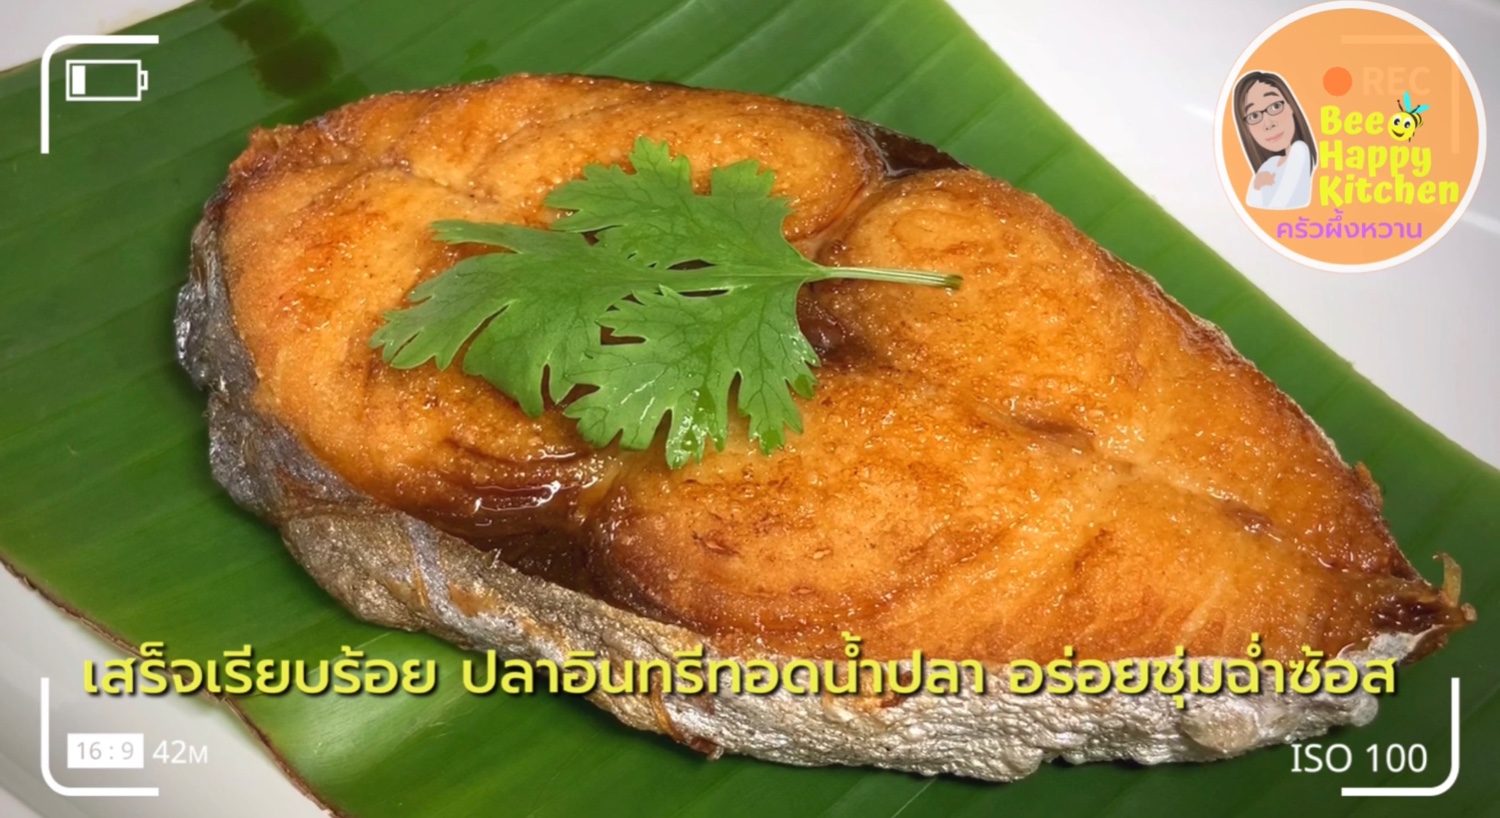 ทำง่าย อร่อยขั้นเทพ!! “เมนูปลาอินทรีทอดน้ำปลา” สีสวย กรอบนอกนุ่มใน  หอมอร่อยชัวร์ |bee happy kitchen แม่ผึ้ง - Pantip